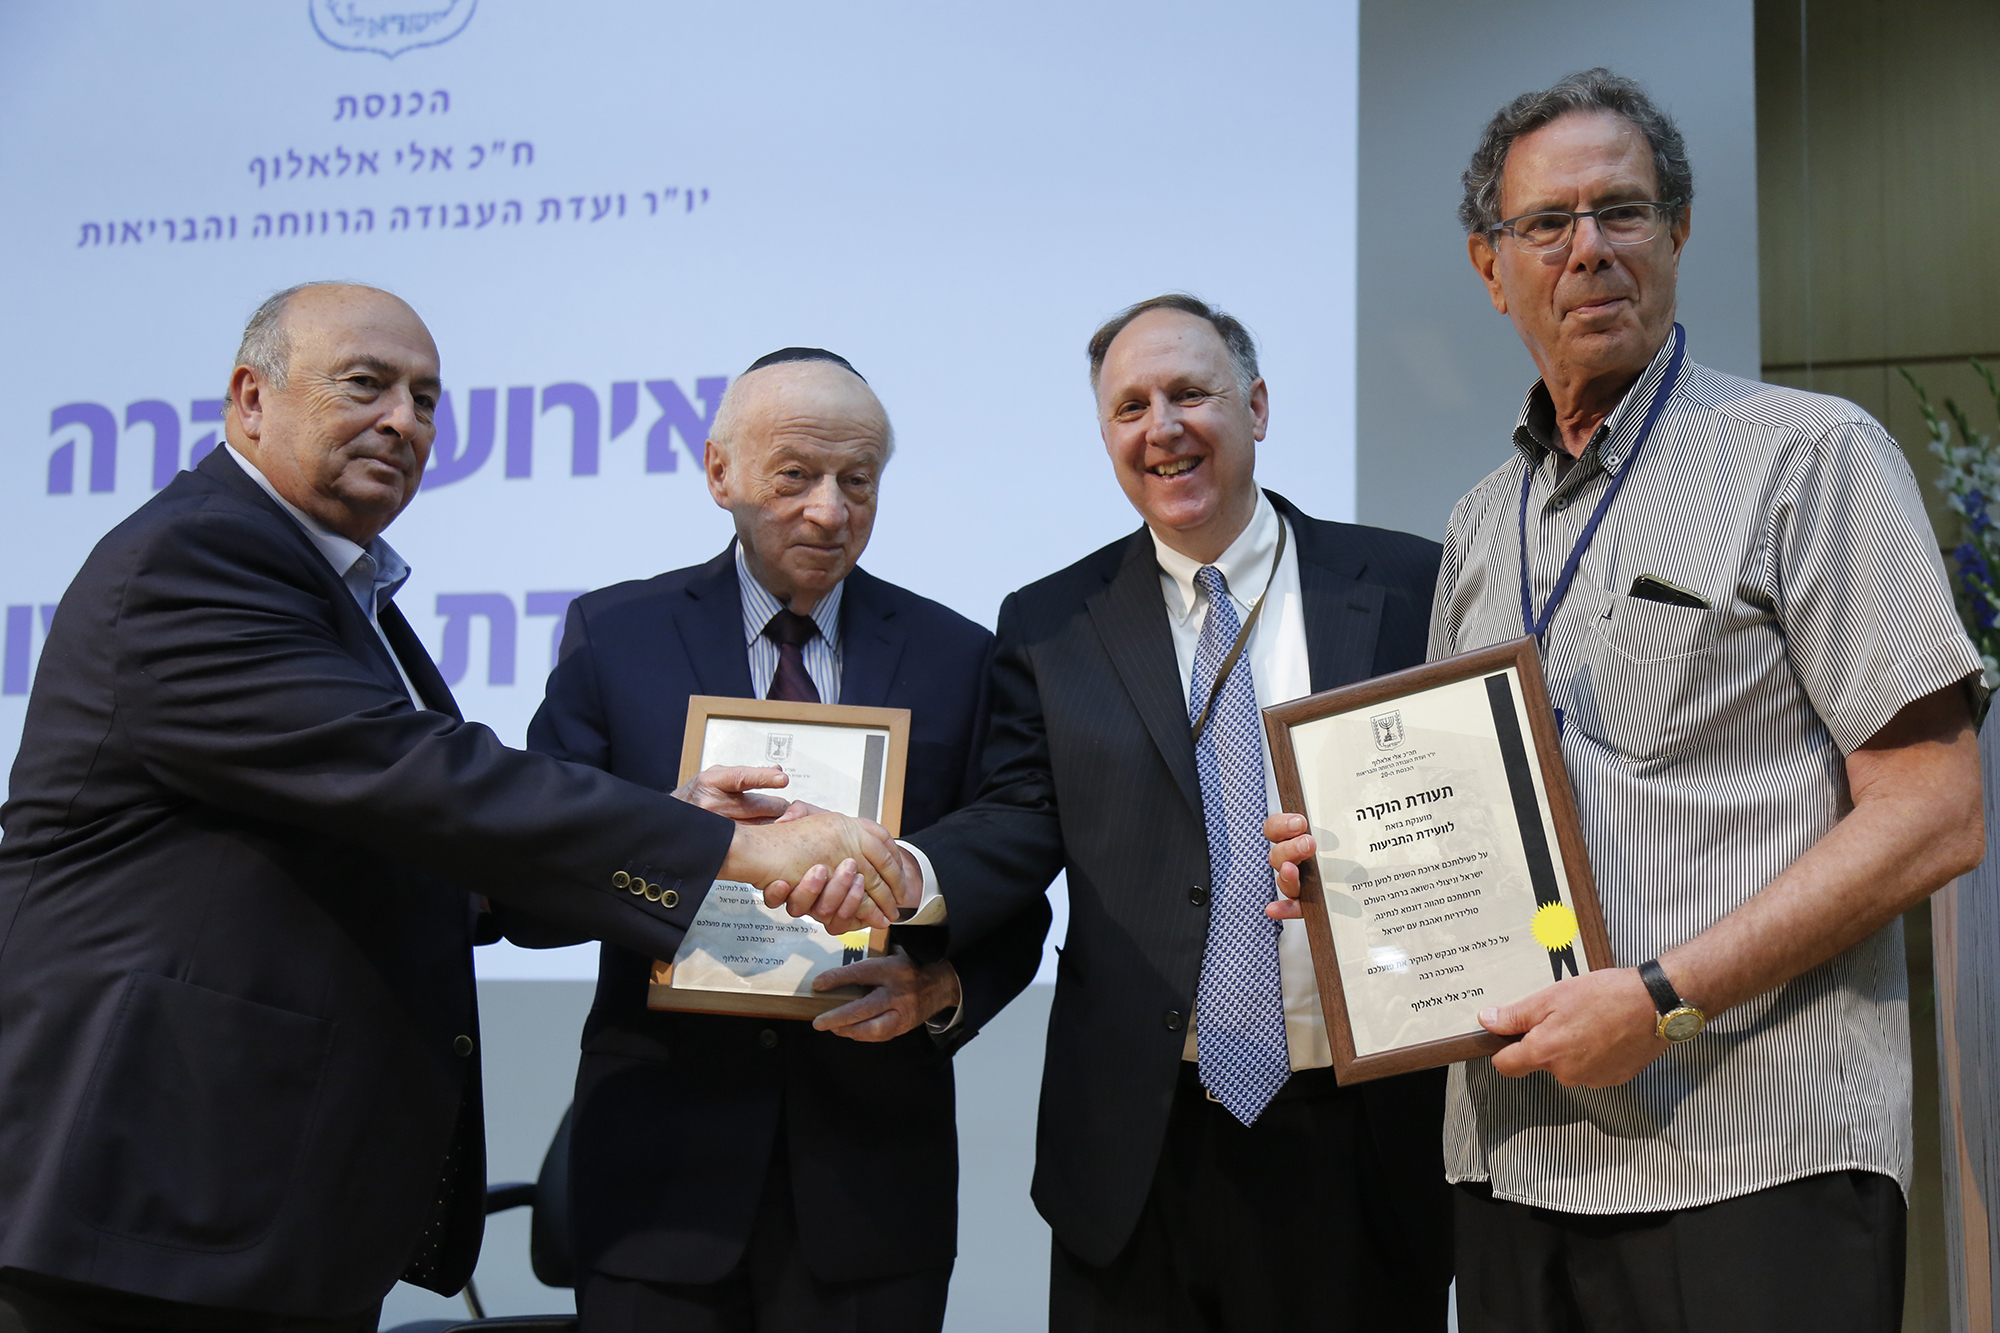 הכנסת מציינת 65 שנות תמיכה בניצולי שואה באירוע הוקרה לוועידת התביעות